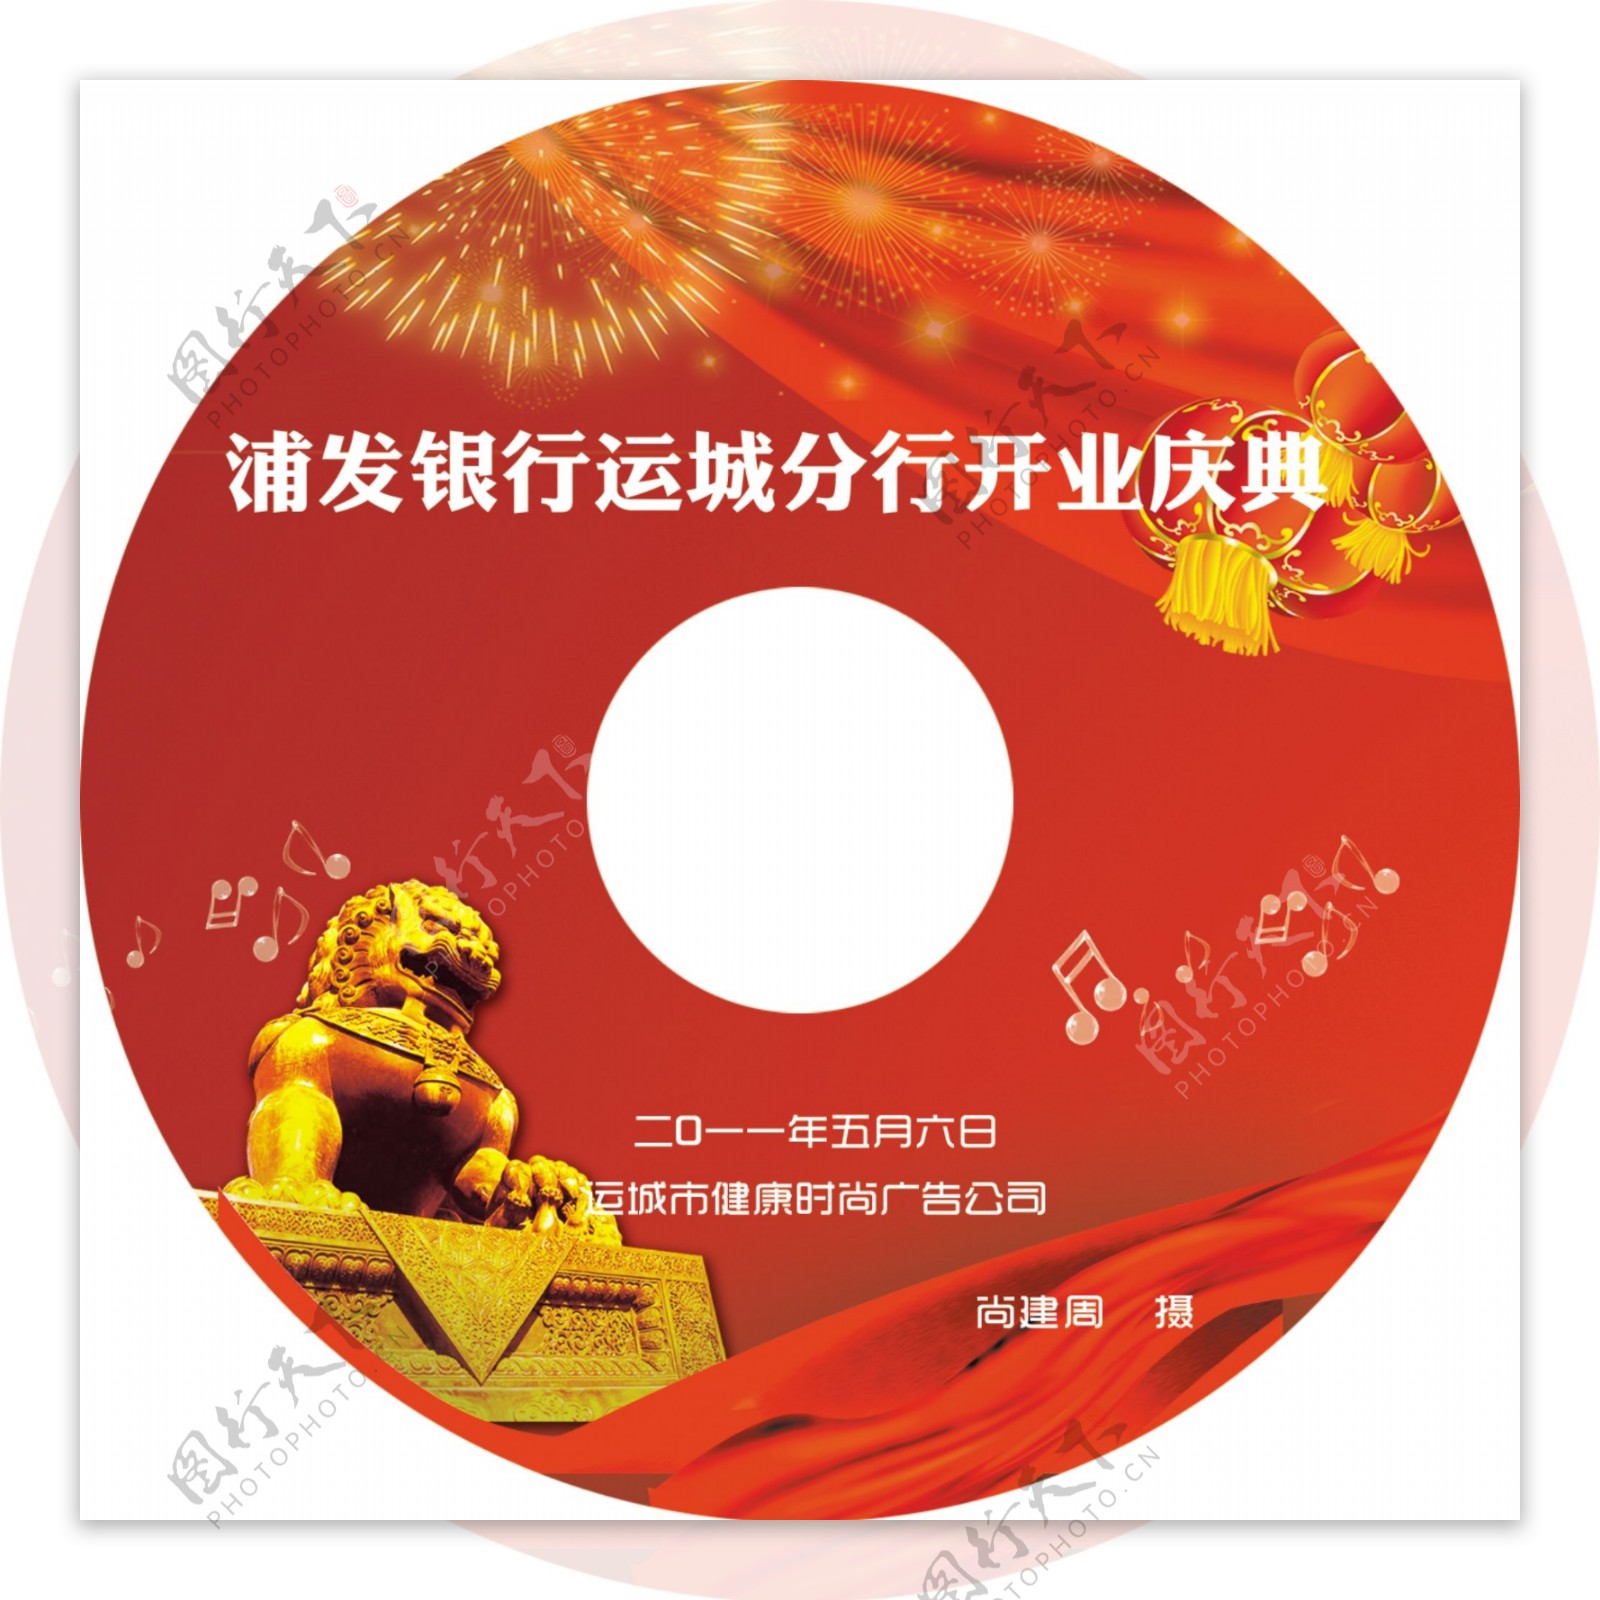 浦发银行开业光盘设计图片